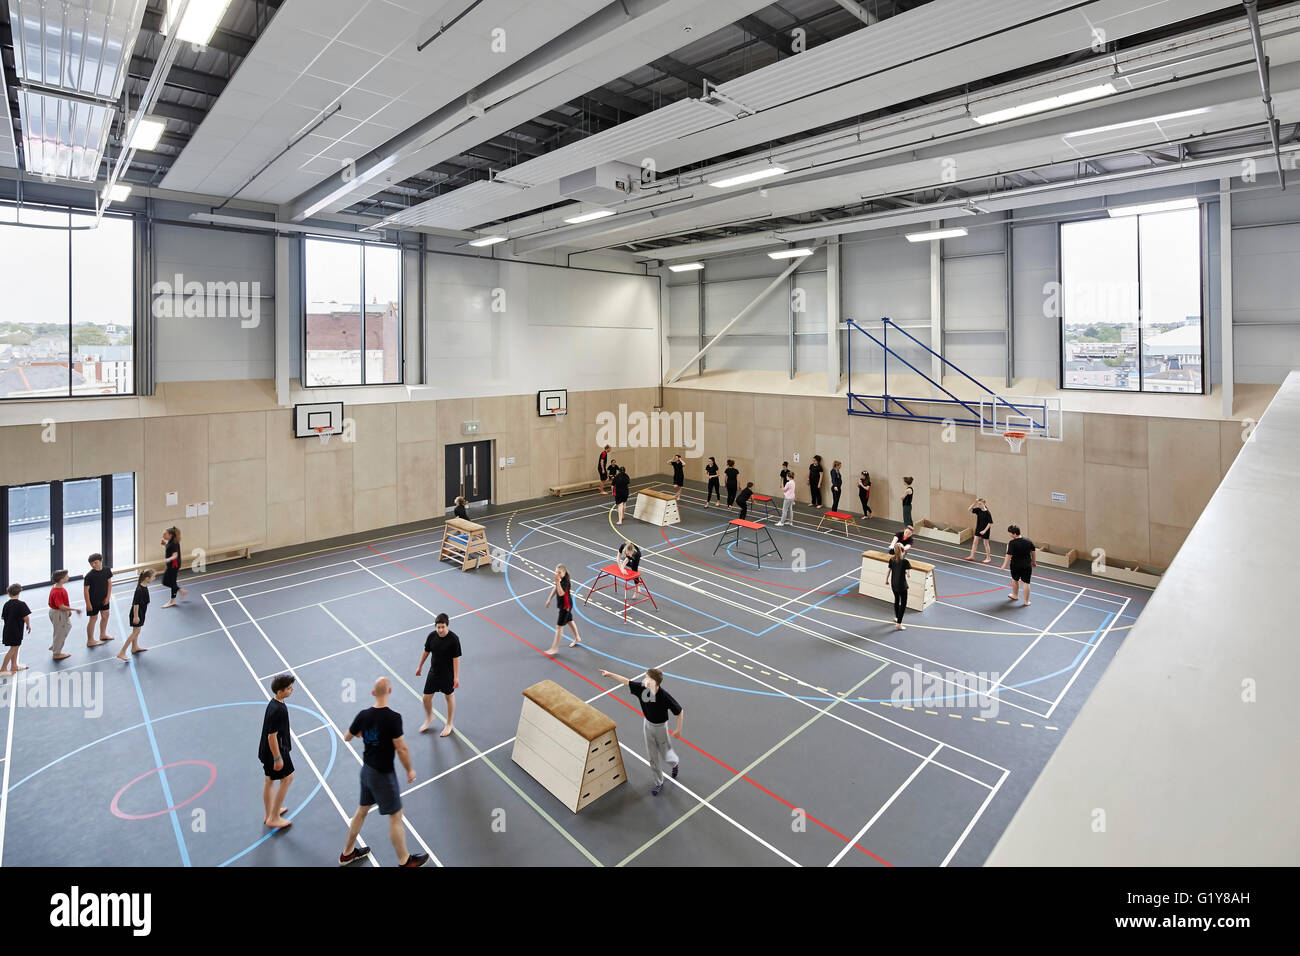 Gimnasio interior. Escuela de Arte Creativo de Plymouth, Plymouth, Reino Unido. Arquitecto: Feilden Clegg Bradley Studios LLP, 2015. Foto de stock